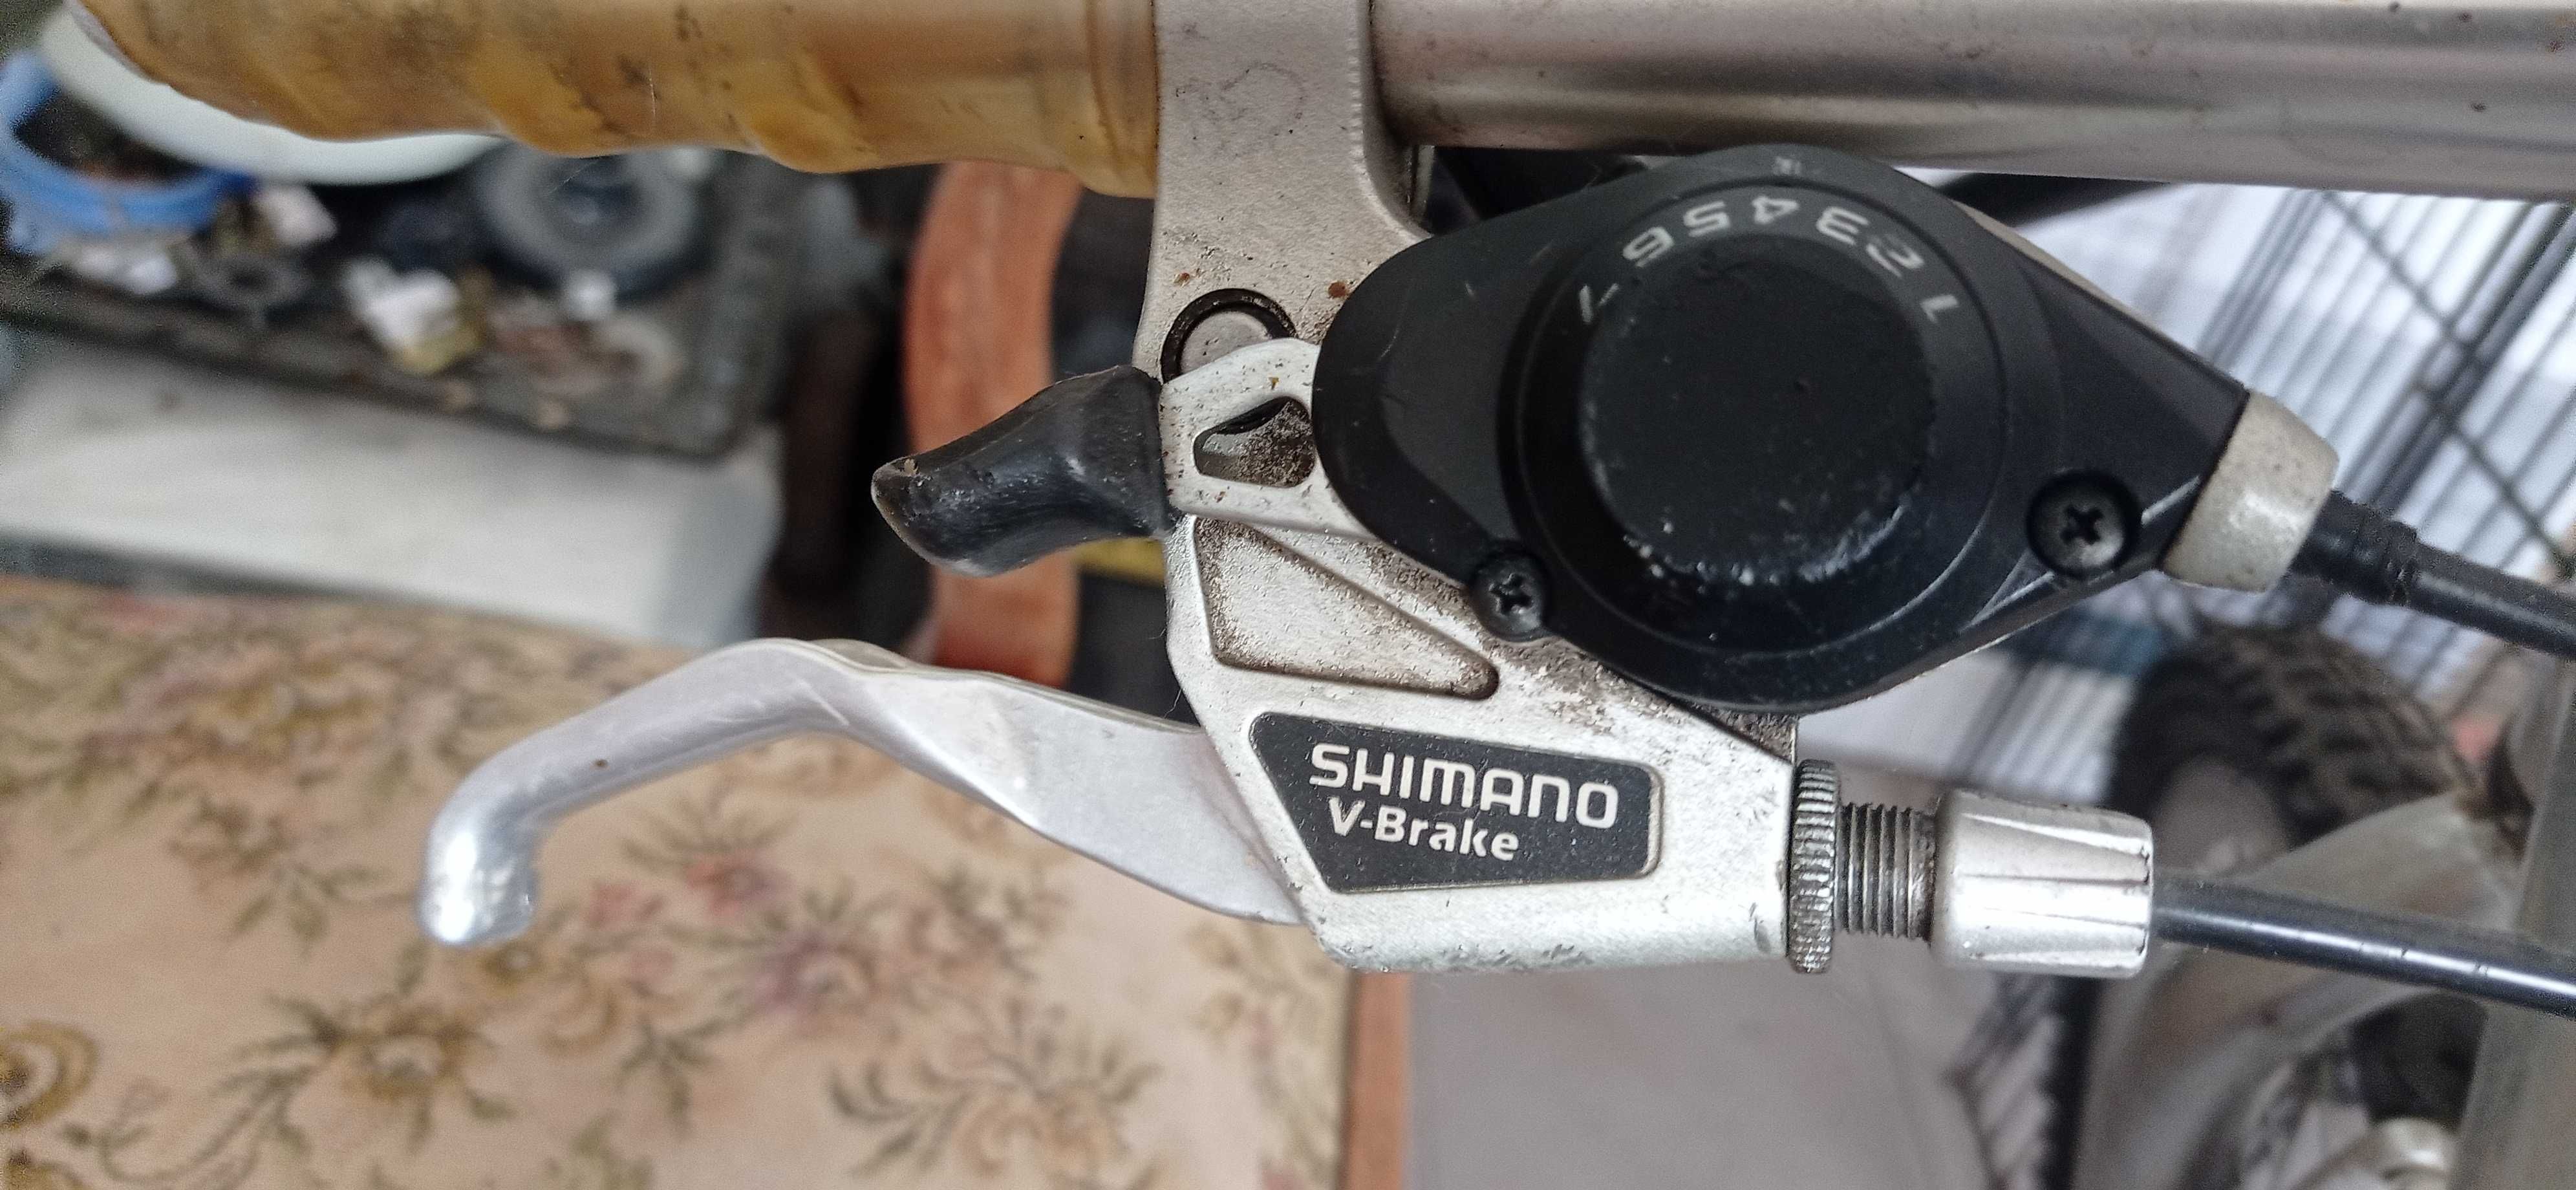 Bicicleta antiga Shimano em aço